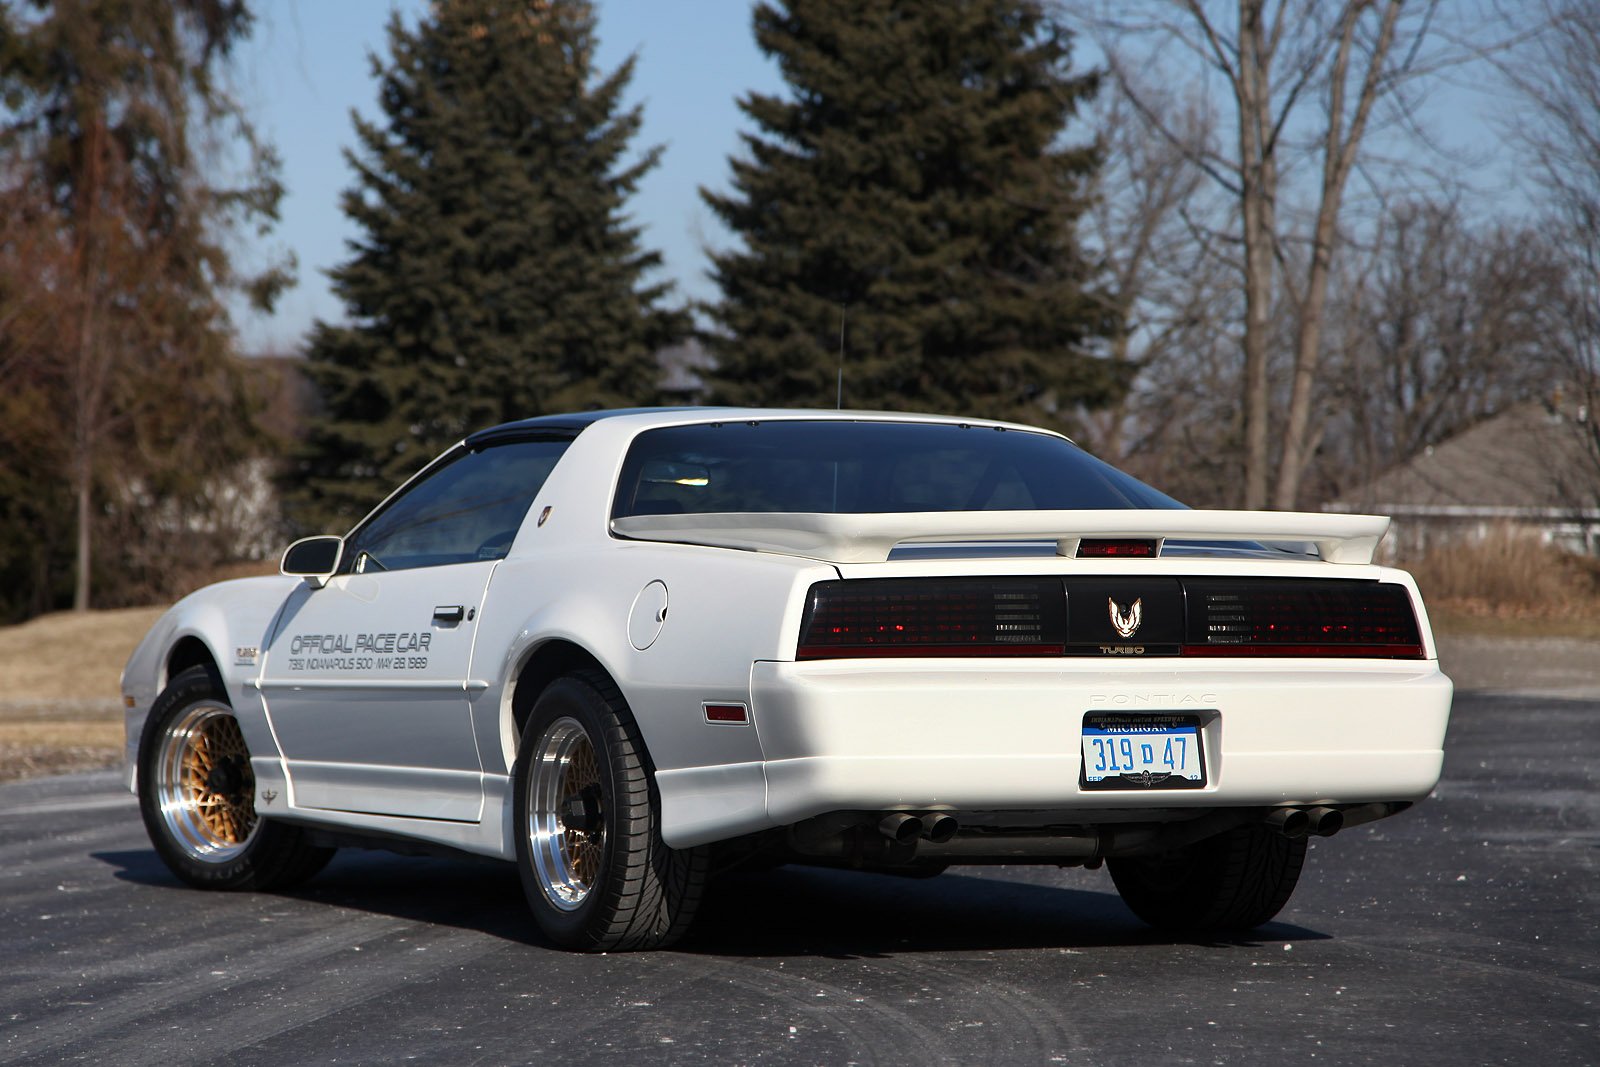 1989, Pontiac, Firebird, Gta, Turbo, Trans, Am, Pace, Car, Edition, Classic, Original, Usa, 1600c1067 01 Wallpaper